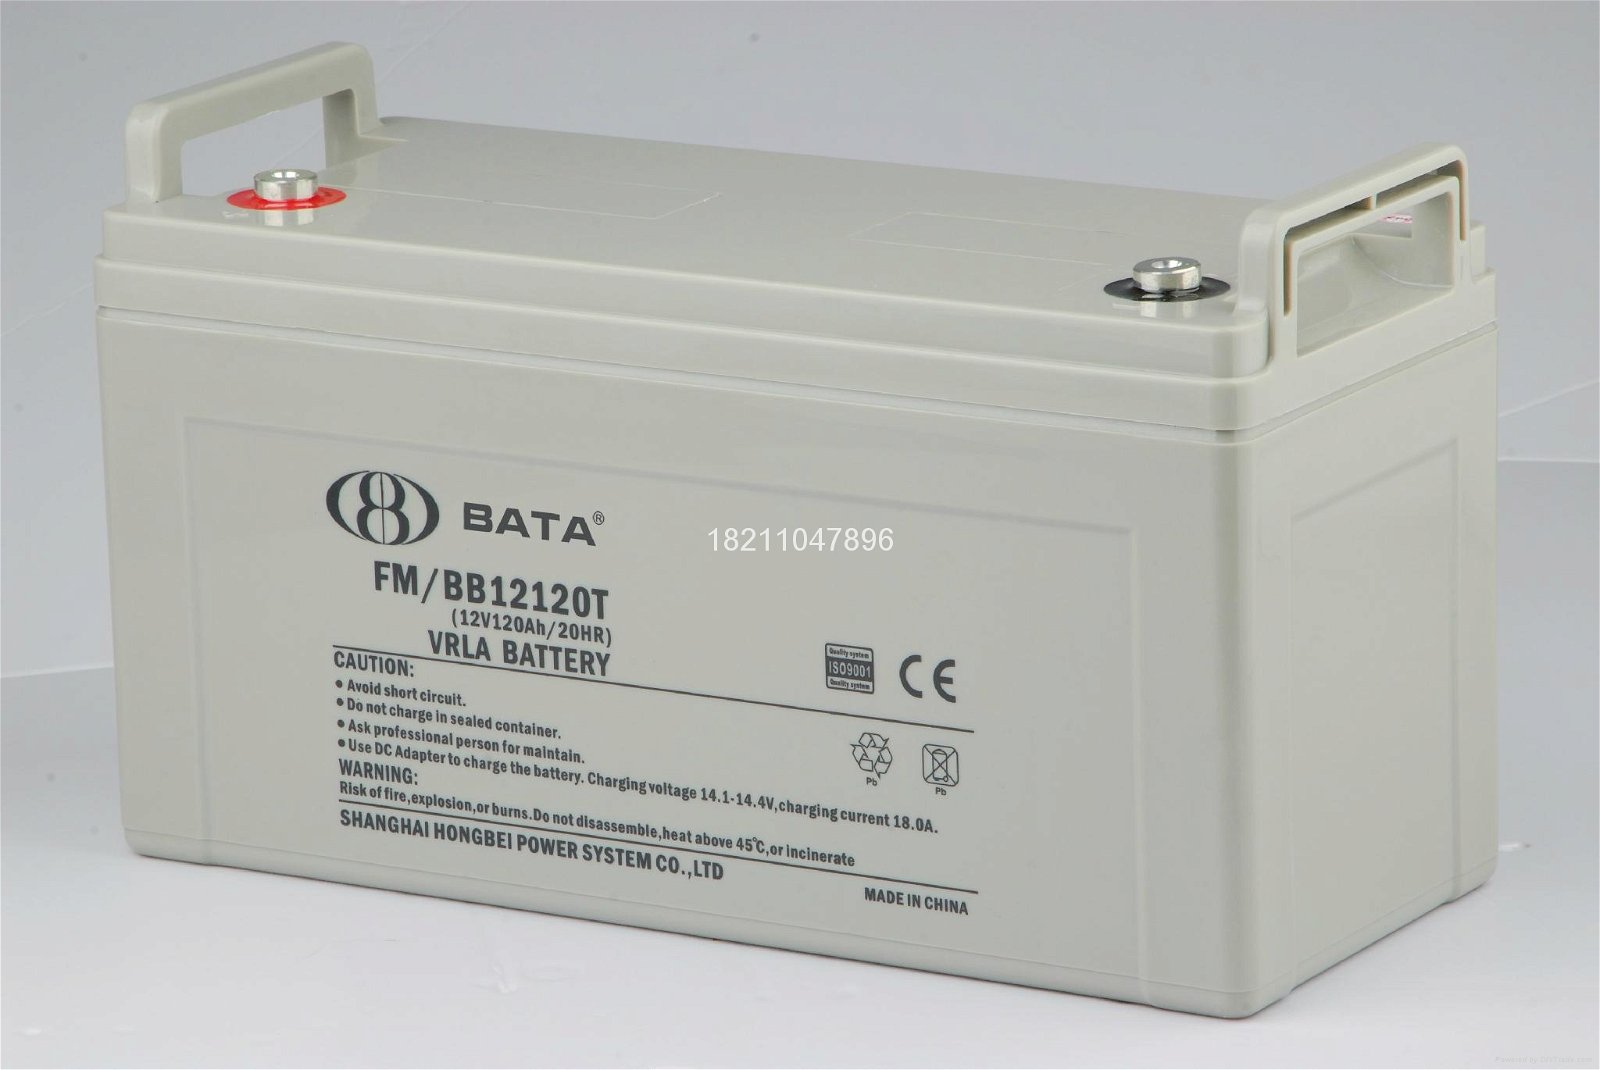 BATA hong bei FM/BB battery series 5